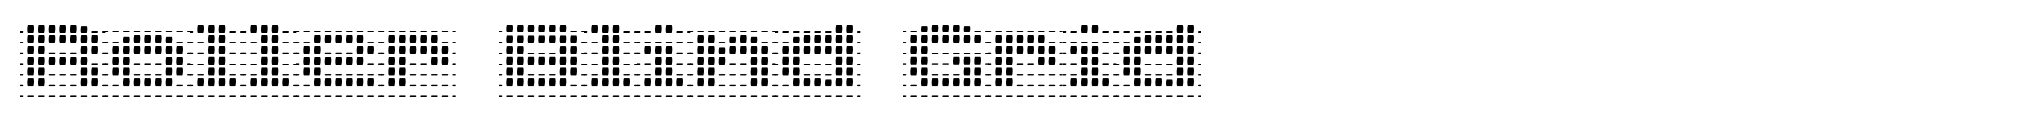 Roller Blind Grid image